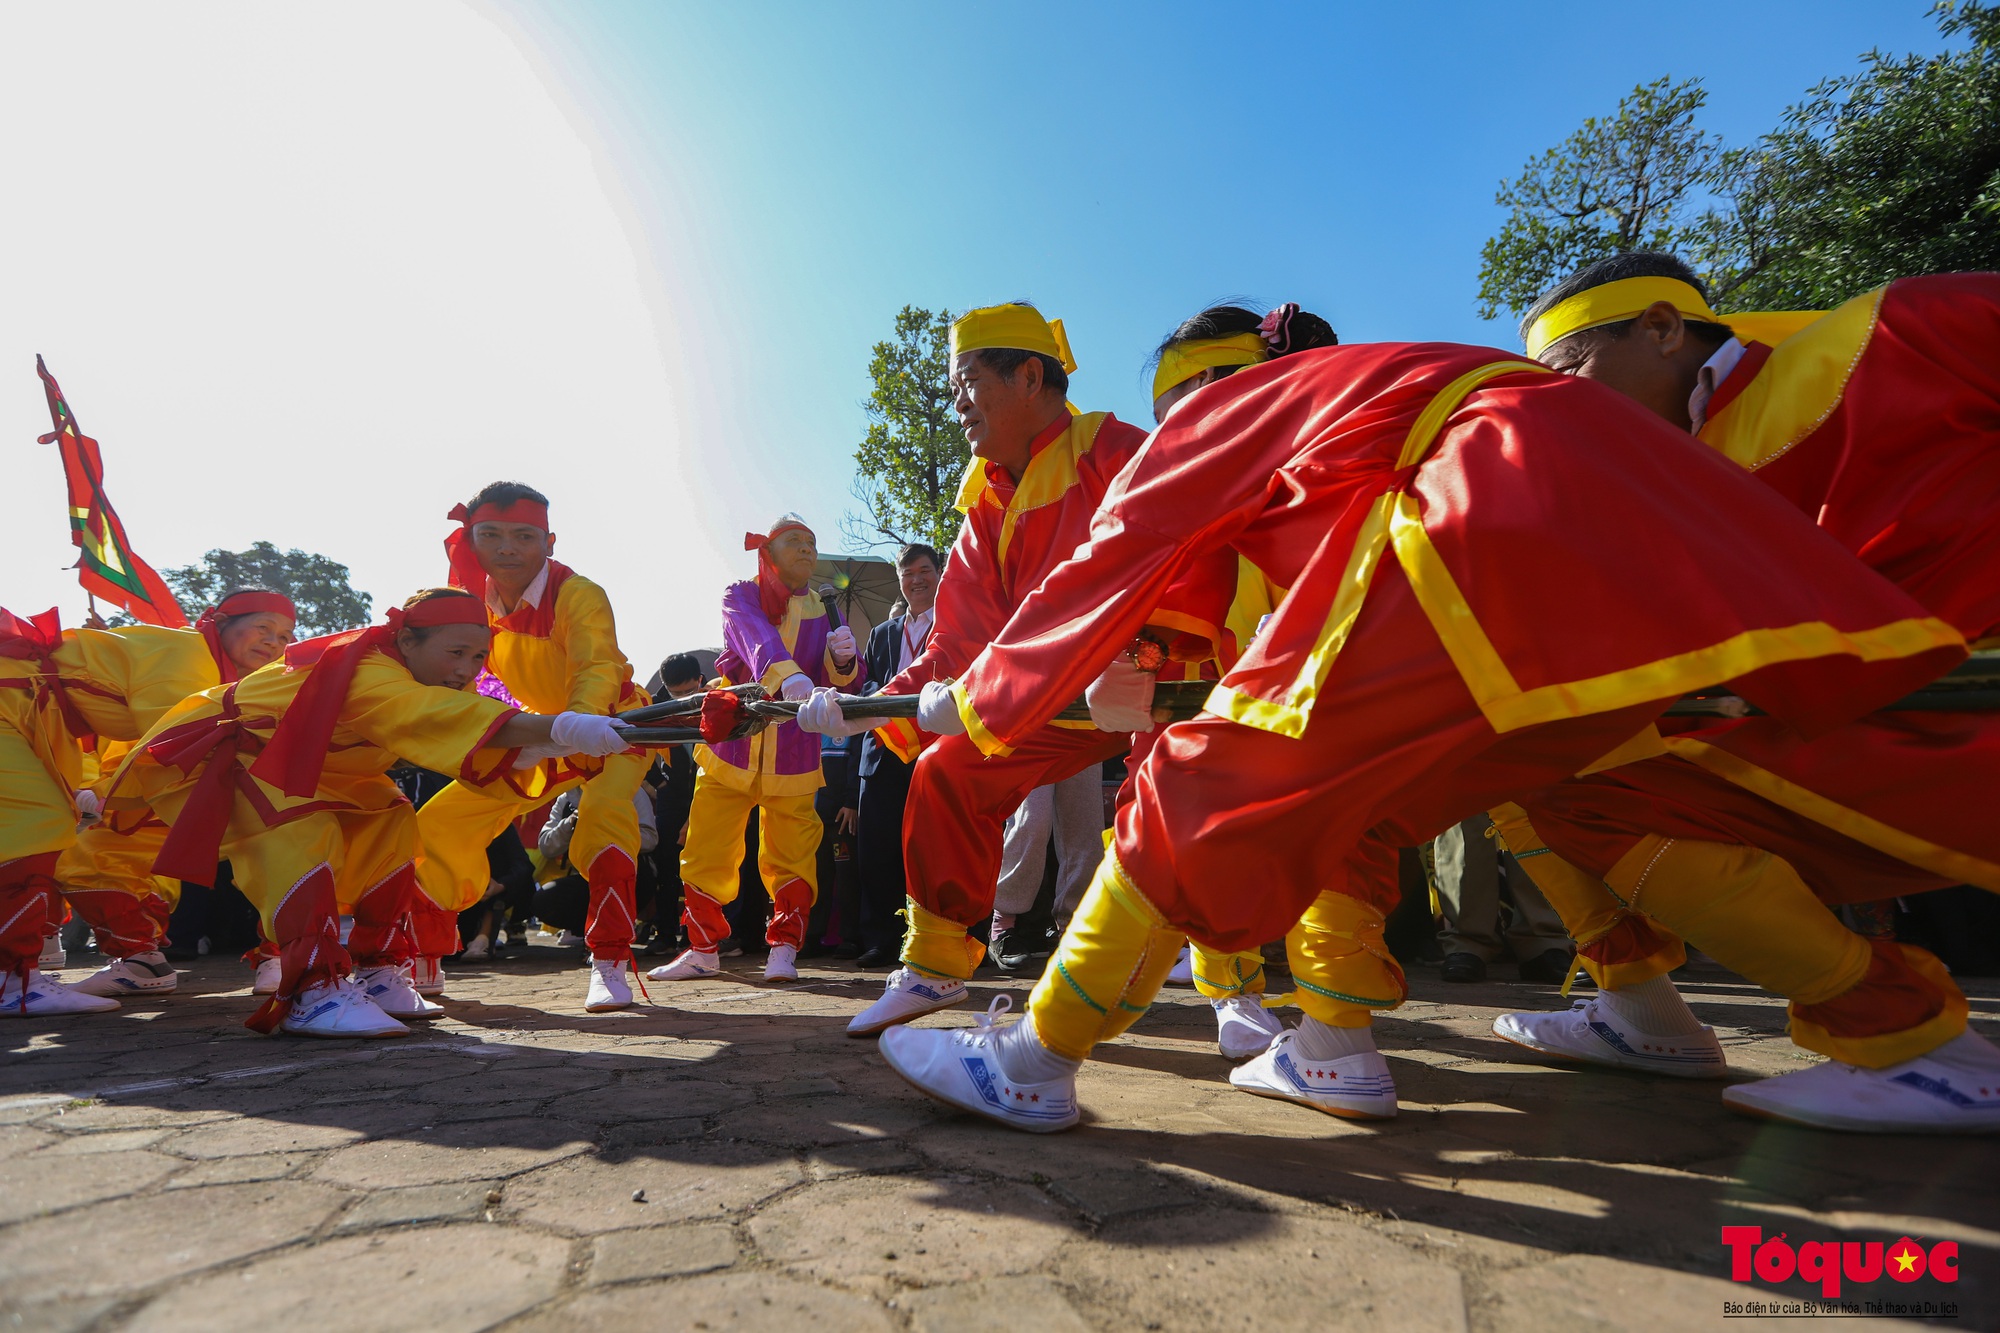 Lần đầu tiên tổ chức liên hoan trình diễn nghi lễ và trò chơi kéo co tại Việt Nam - Ảnh 8.